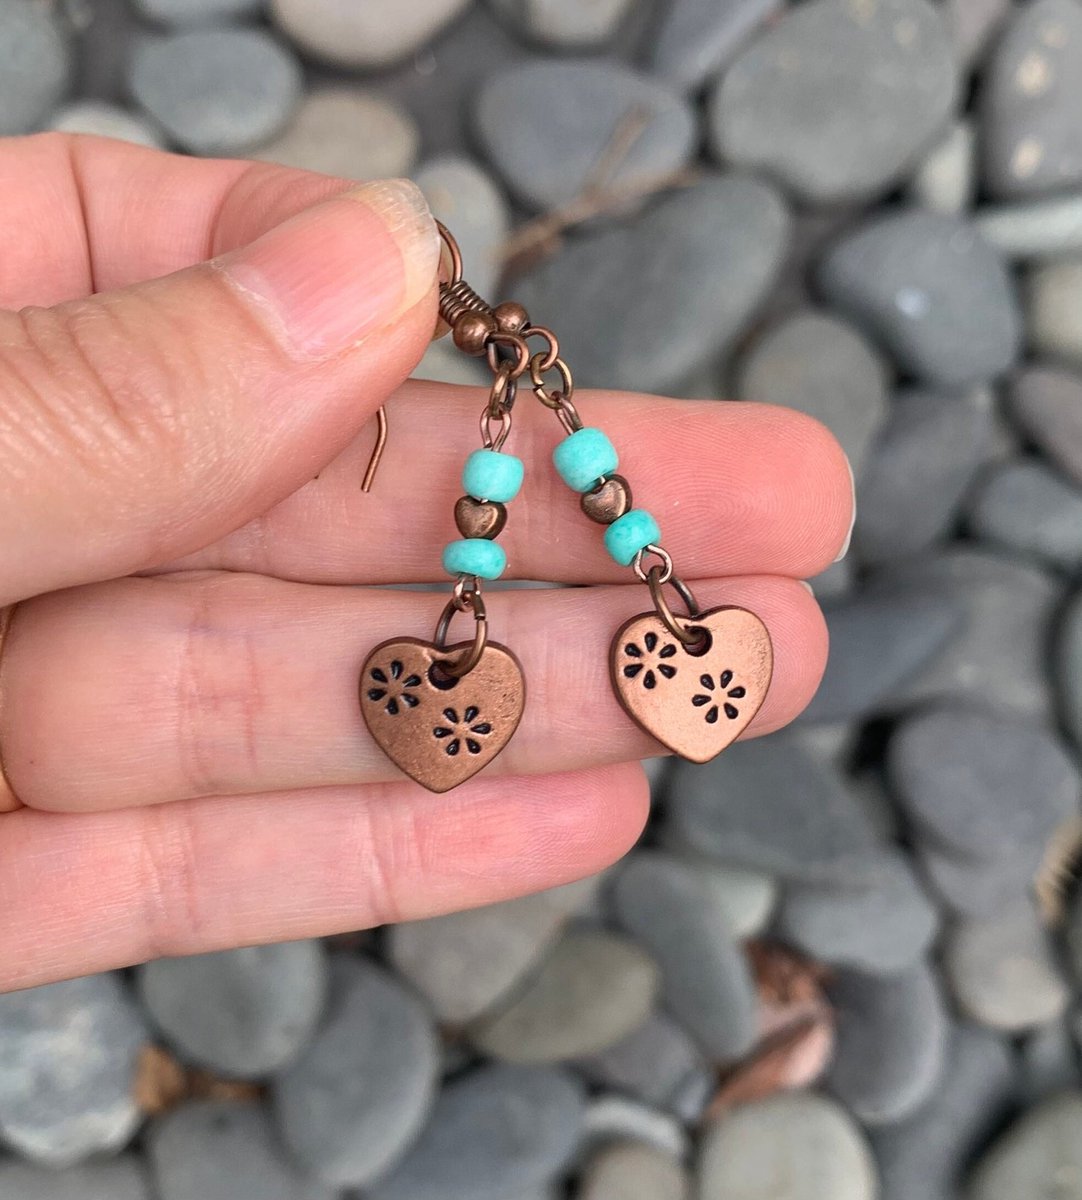 #Kaybejeweled #etsy shop: Copper Boho Heart Dangle Earrings - Copper Flower Earrings - Minimalist Jewelry etsy.me/3eWHQQc #Copperearrings #copperheart #heartearrings #bohoearrings #turquoiseearrings #westernearrings #minimalistearrings #Kaybejeweled